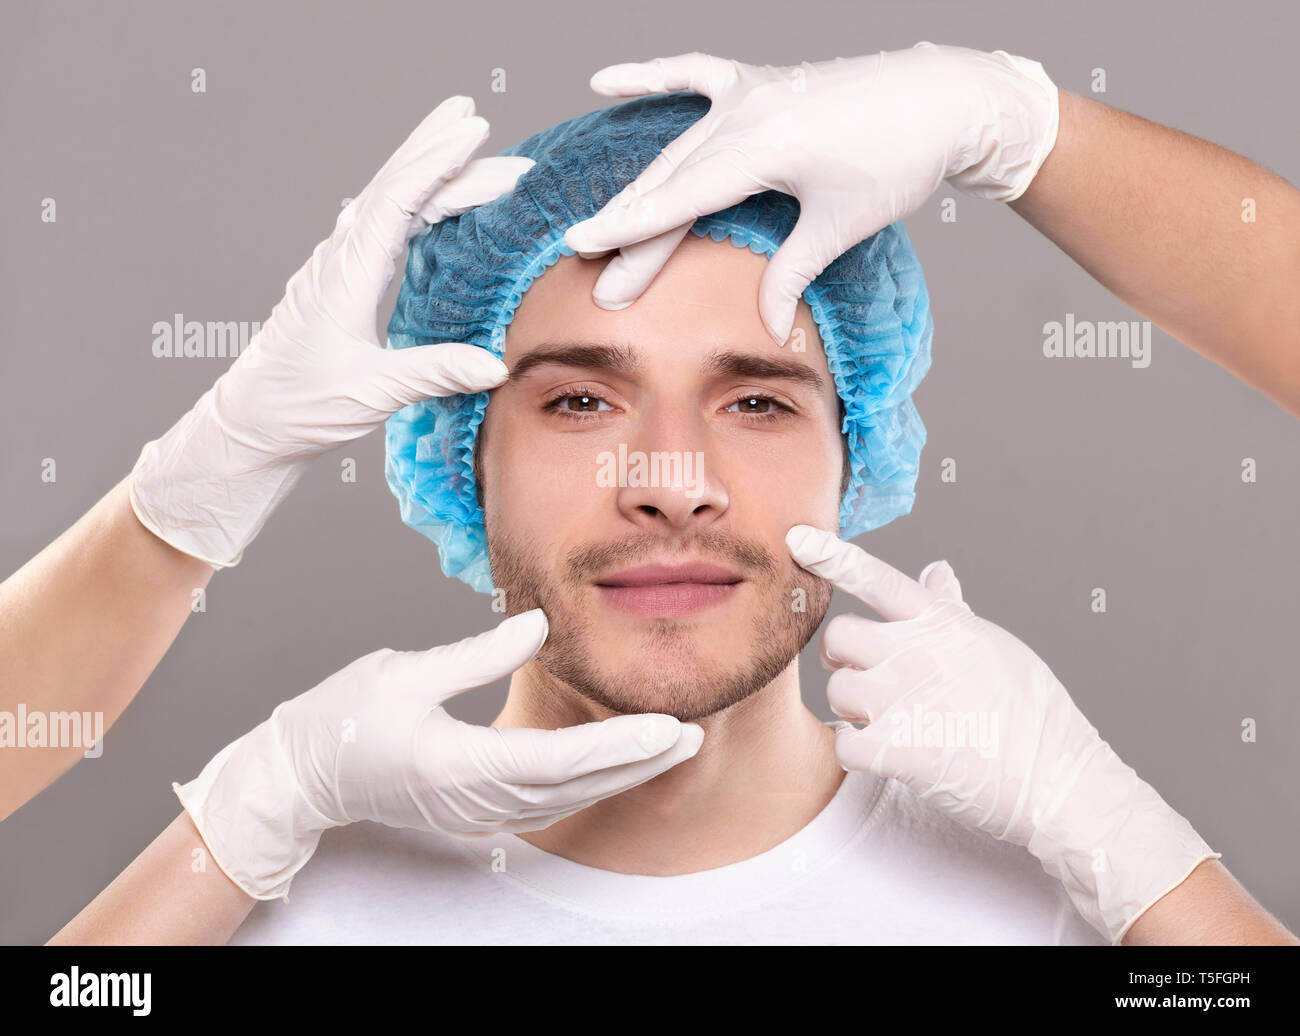 Doctor's Hände in Handschuhen berühren Gesicht von gutaussehenden jungen Mann Stockfoto